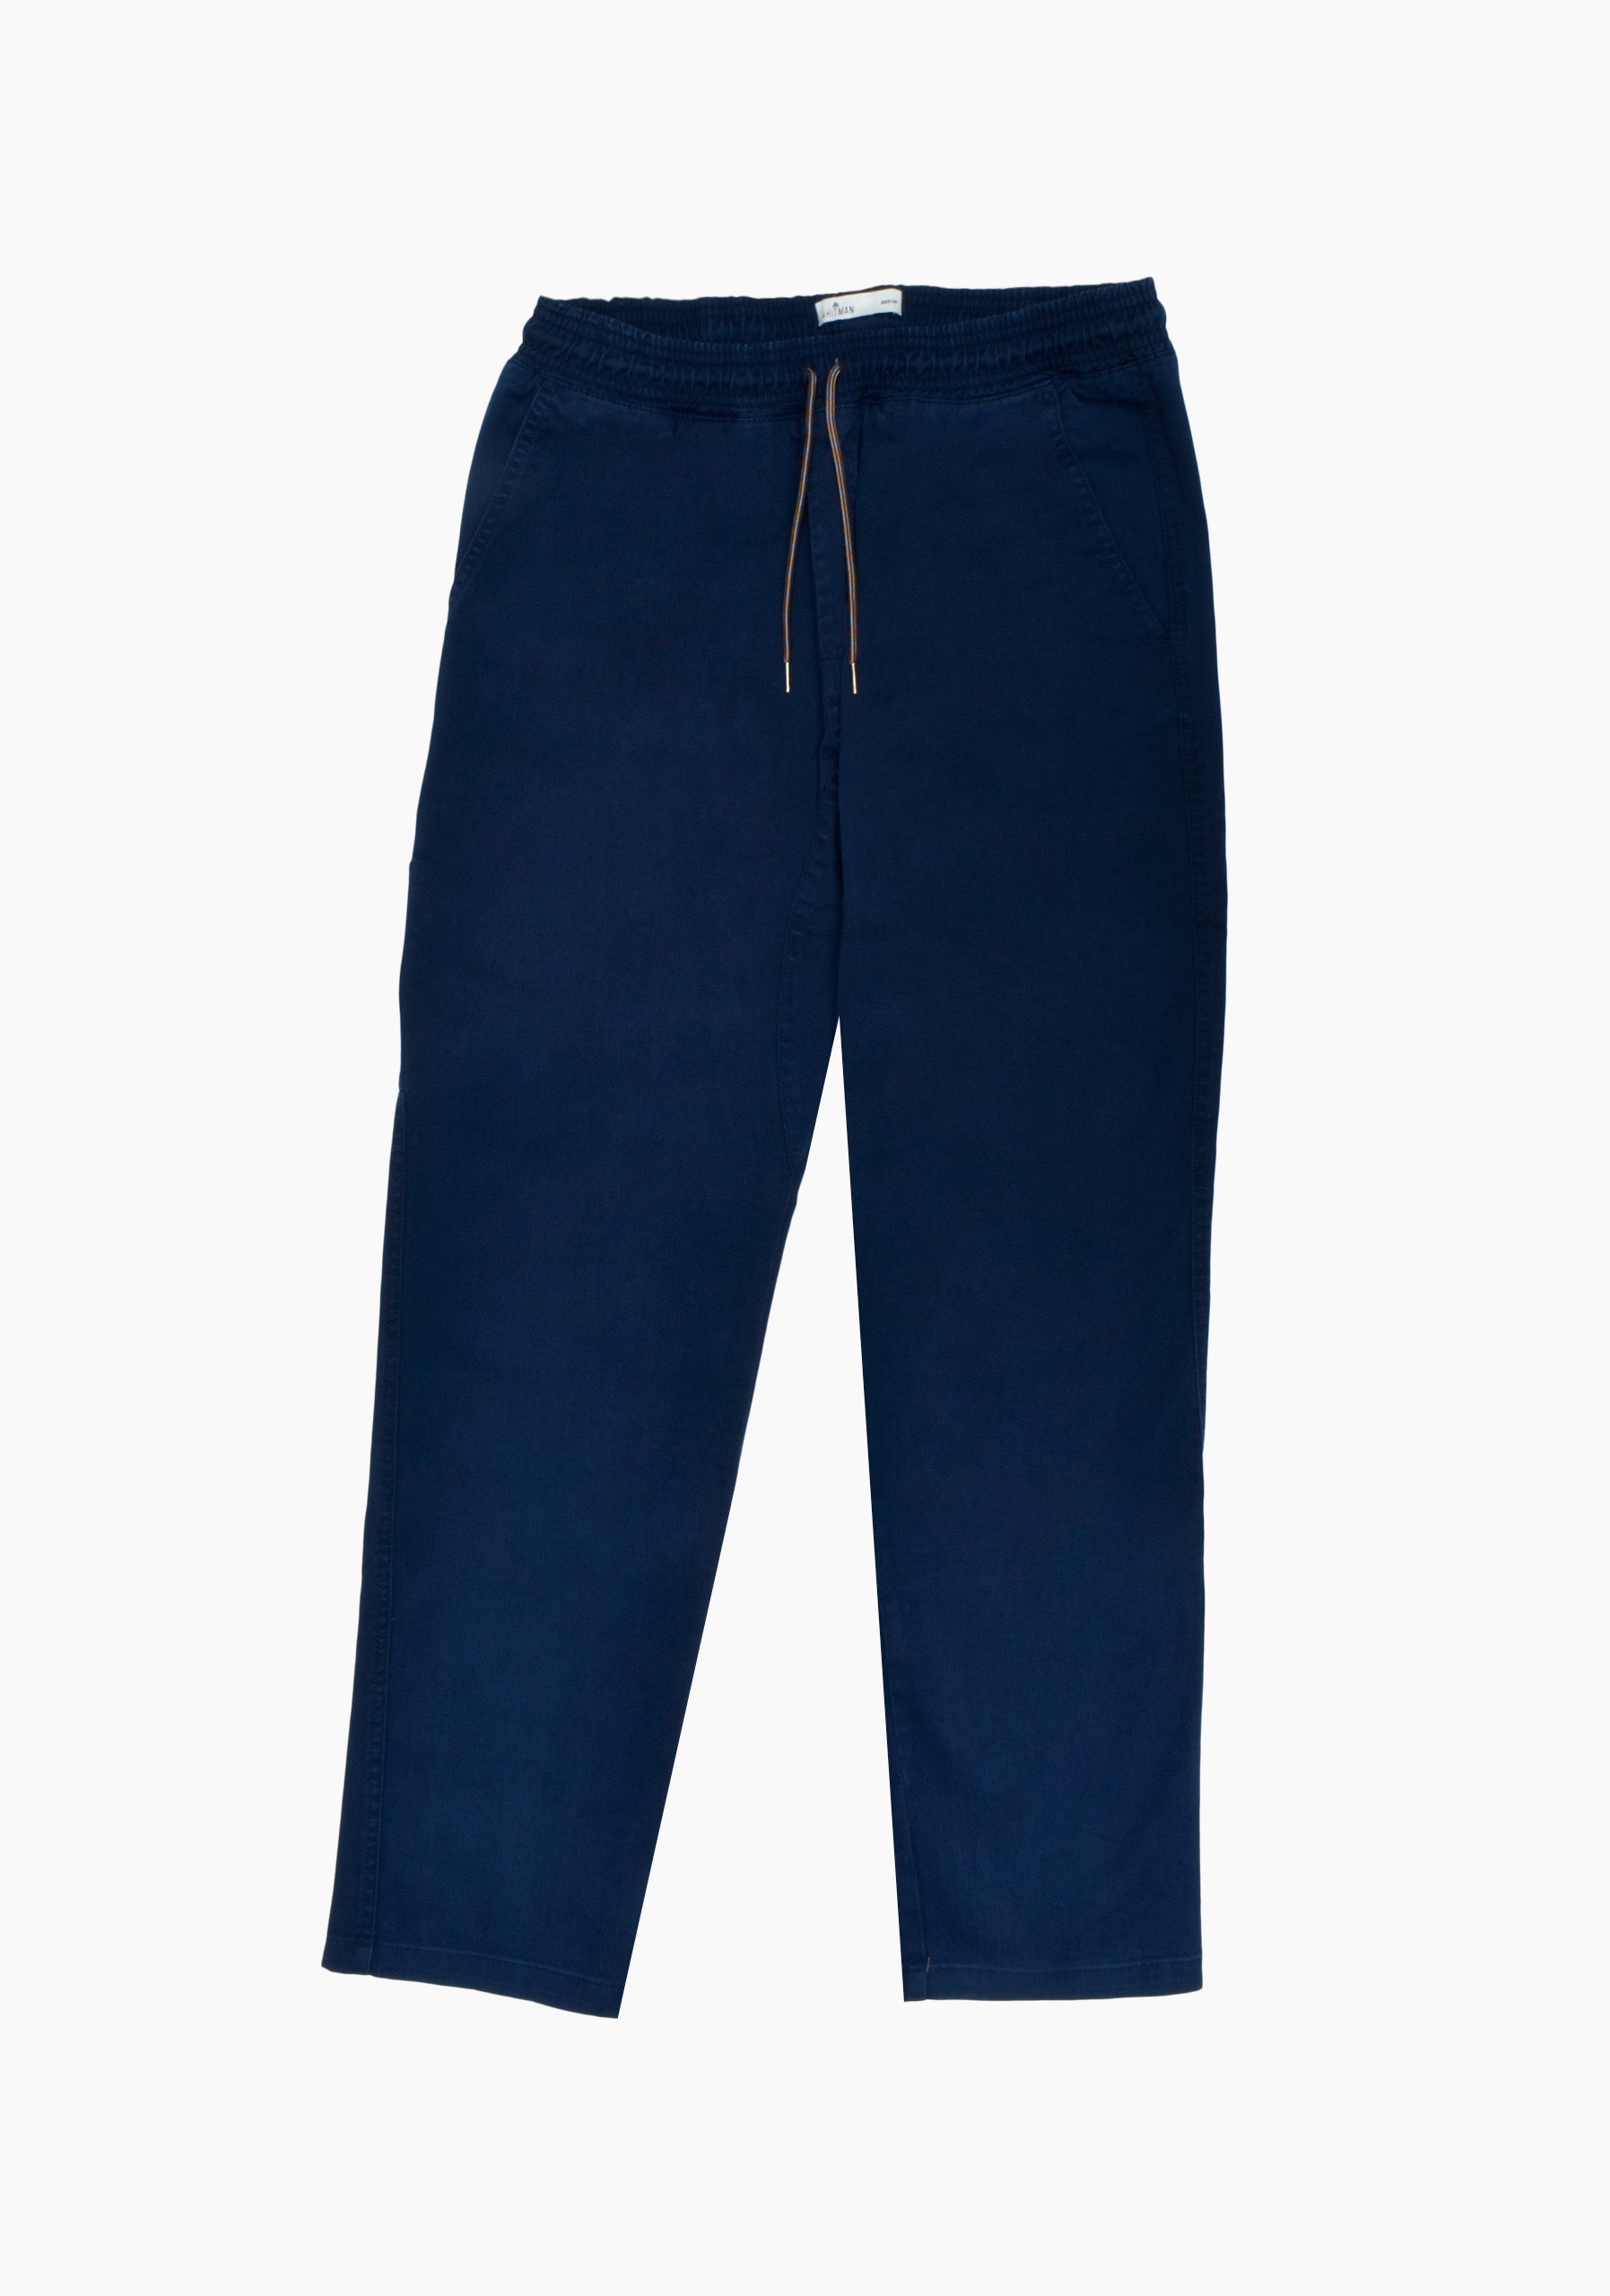 Pantalon Hooper Azul Osc.